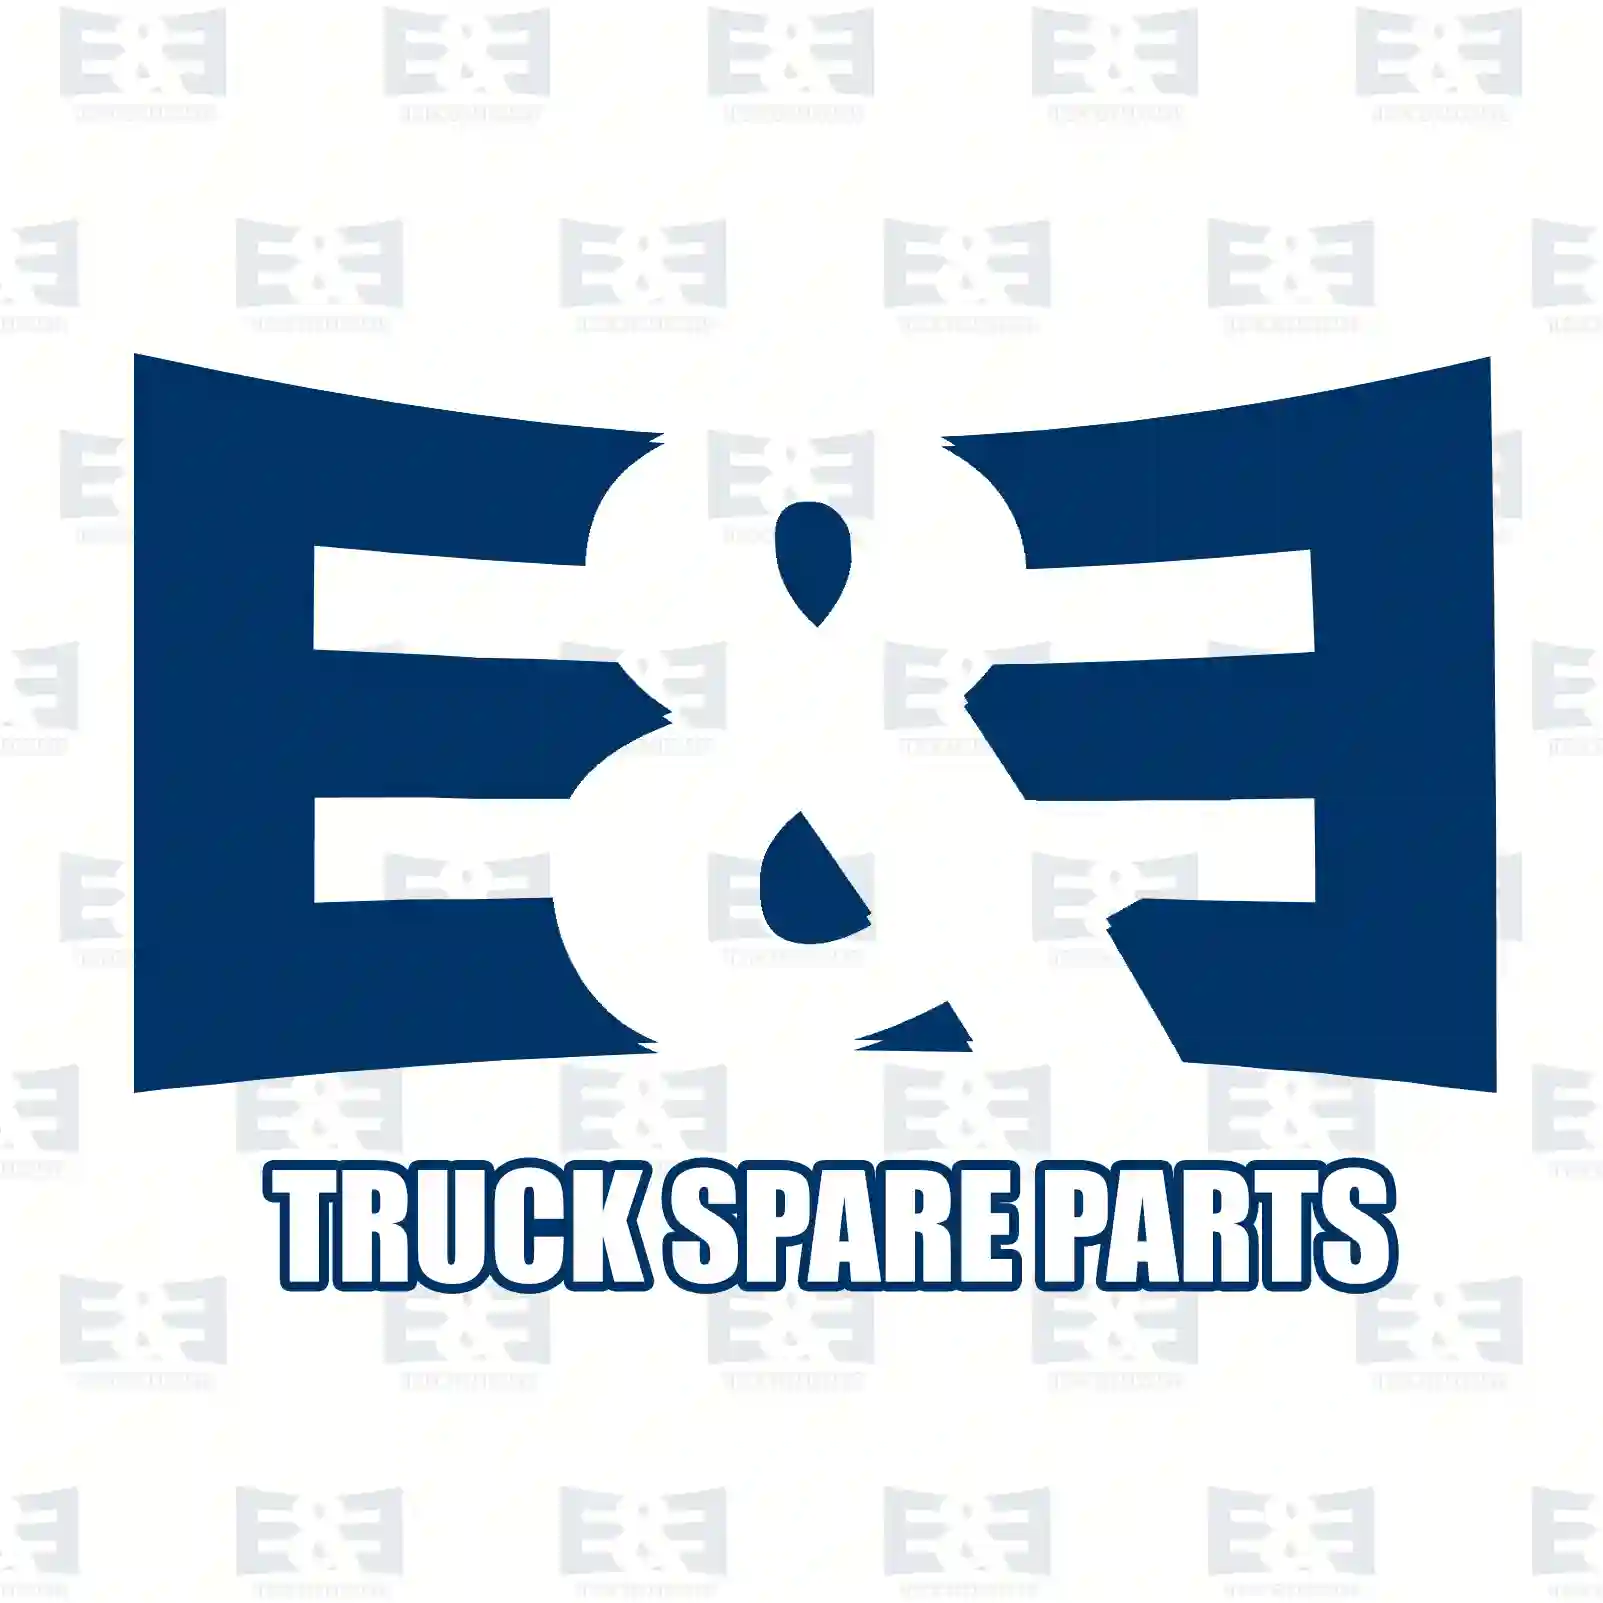 Control cable, Switching, 2E2277674, 7420980581 ||  2E2277674 E&E Truck Spare Parts | Truck Spare Parts, Auotomotive Spare Parts Control cable, Switching, 2E2277674, 7420980581 ||  2E2277674 E&E Truck Spare Parts | Truck Spare Parts, Auotomotive Spare Parts